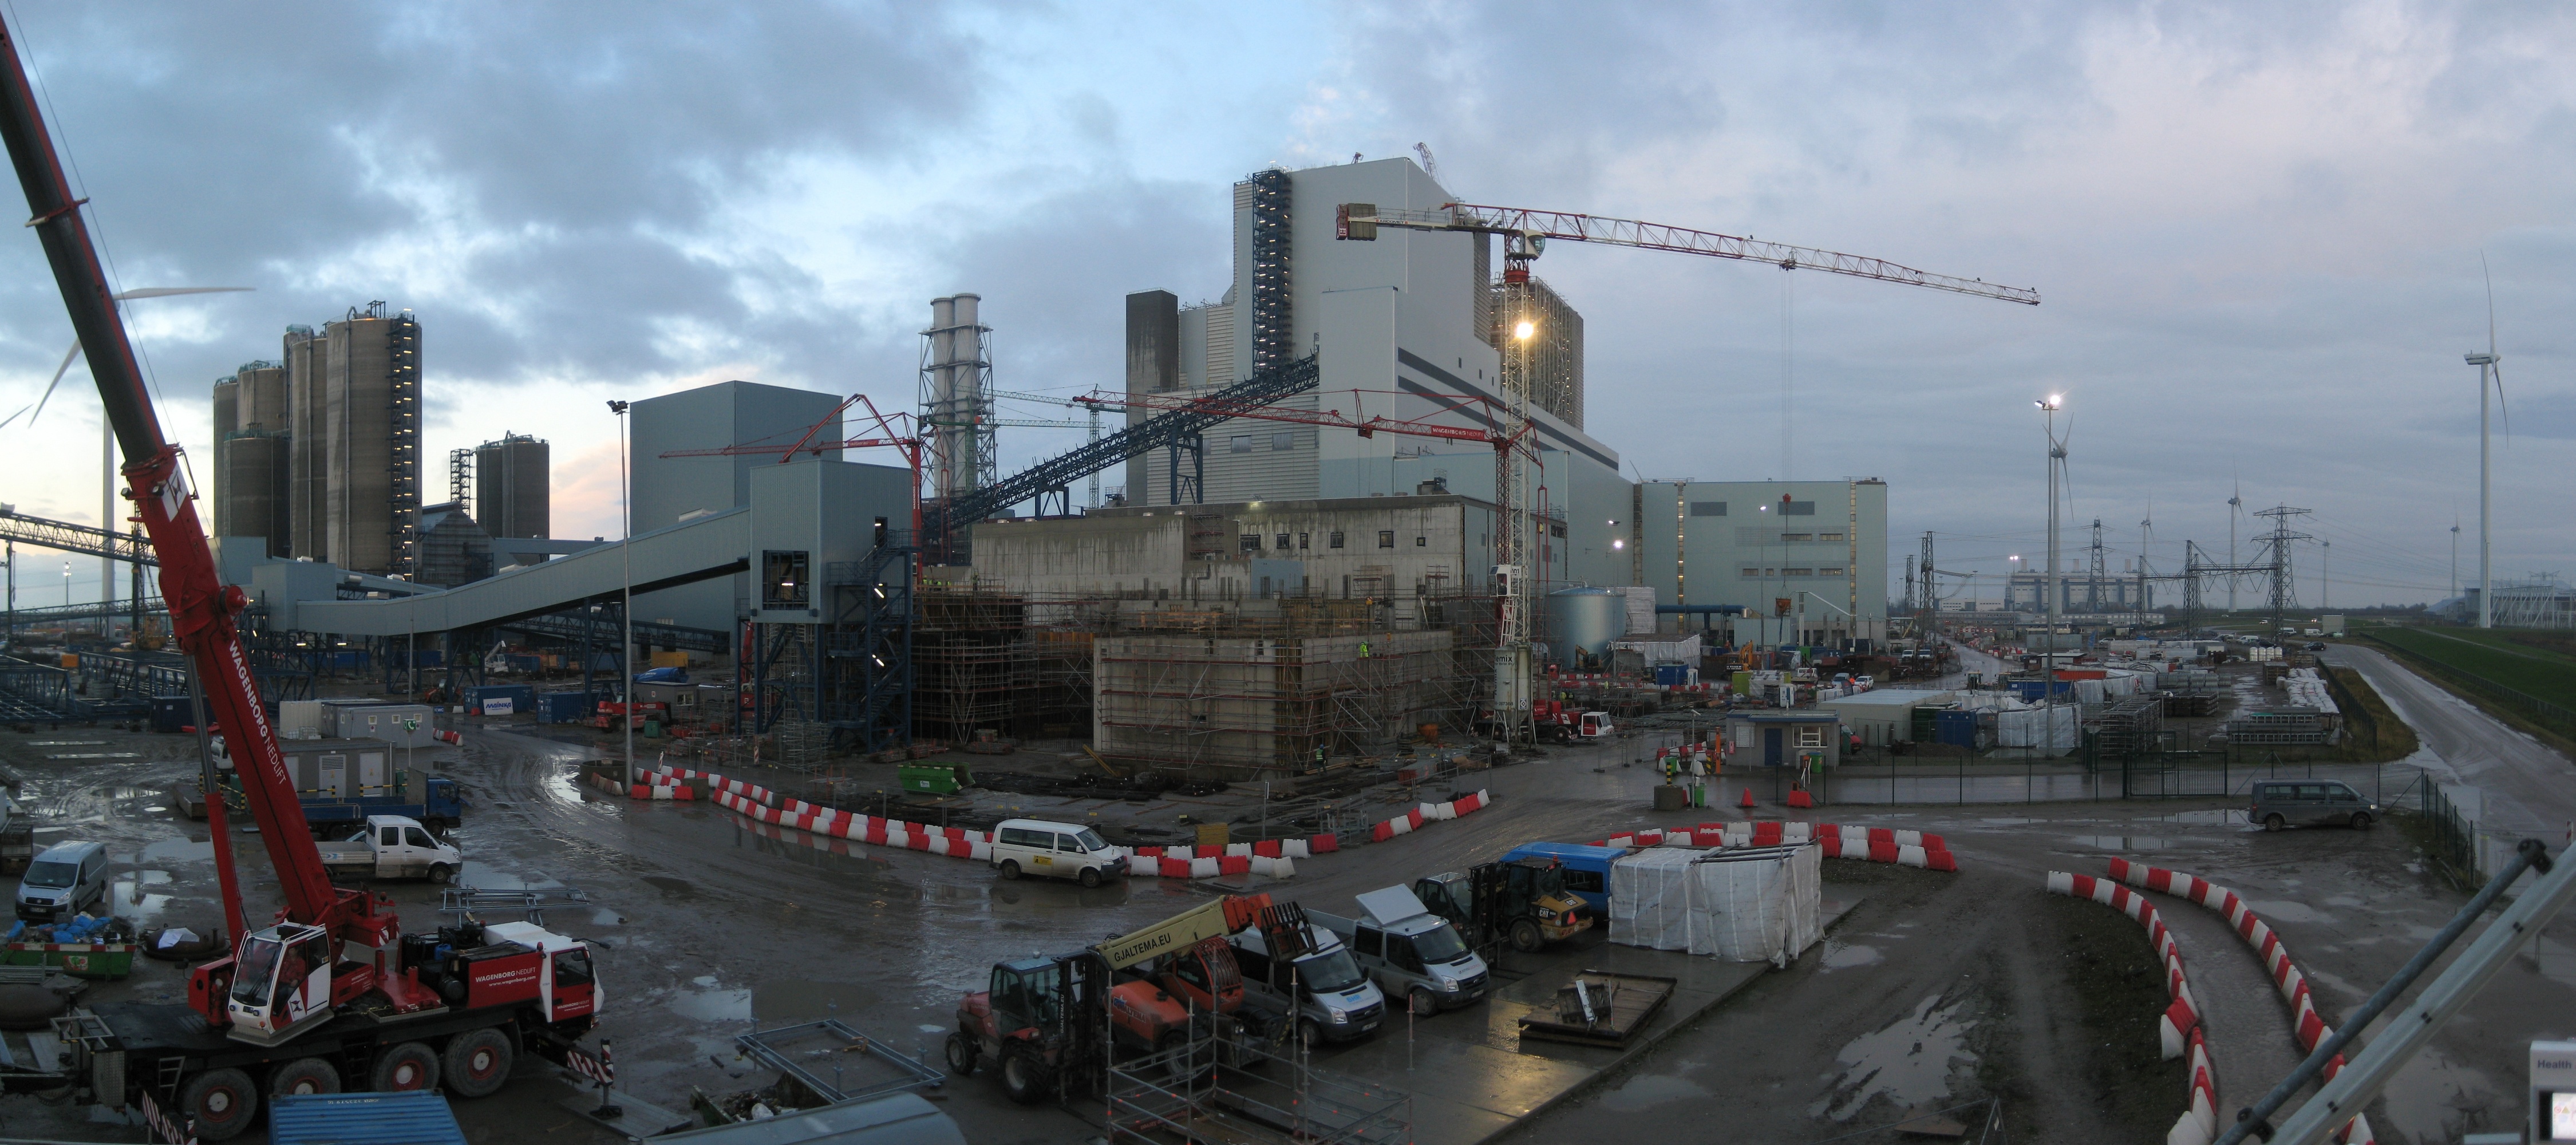 De grote energiecentrale in de Eemshaven is hier nog in aanbouw (2012).